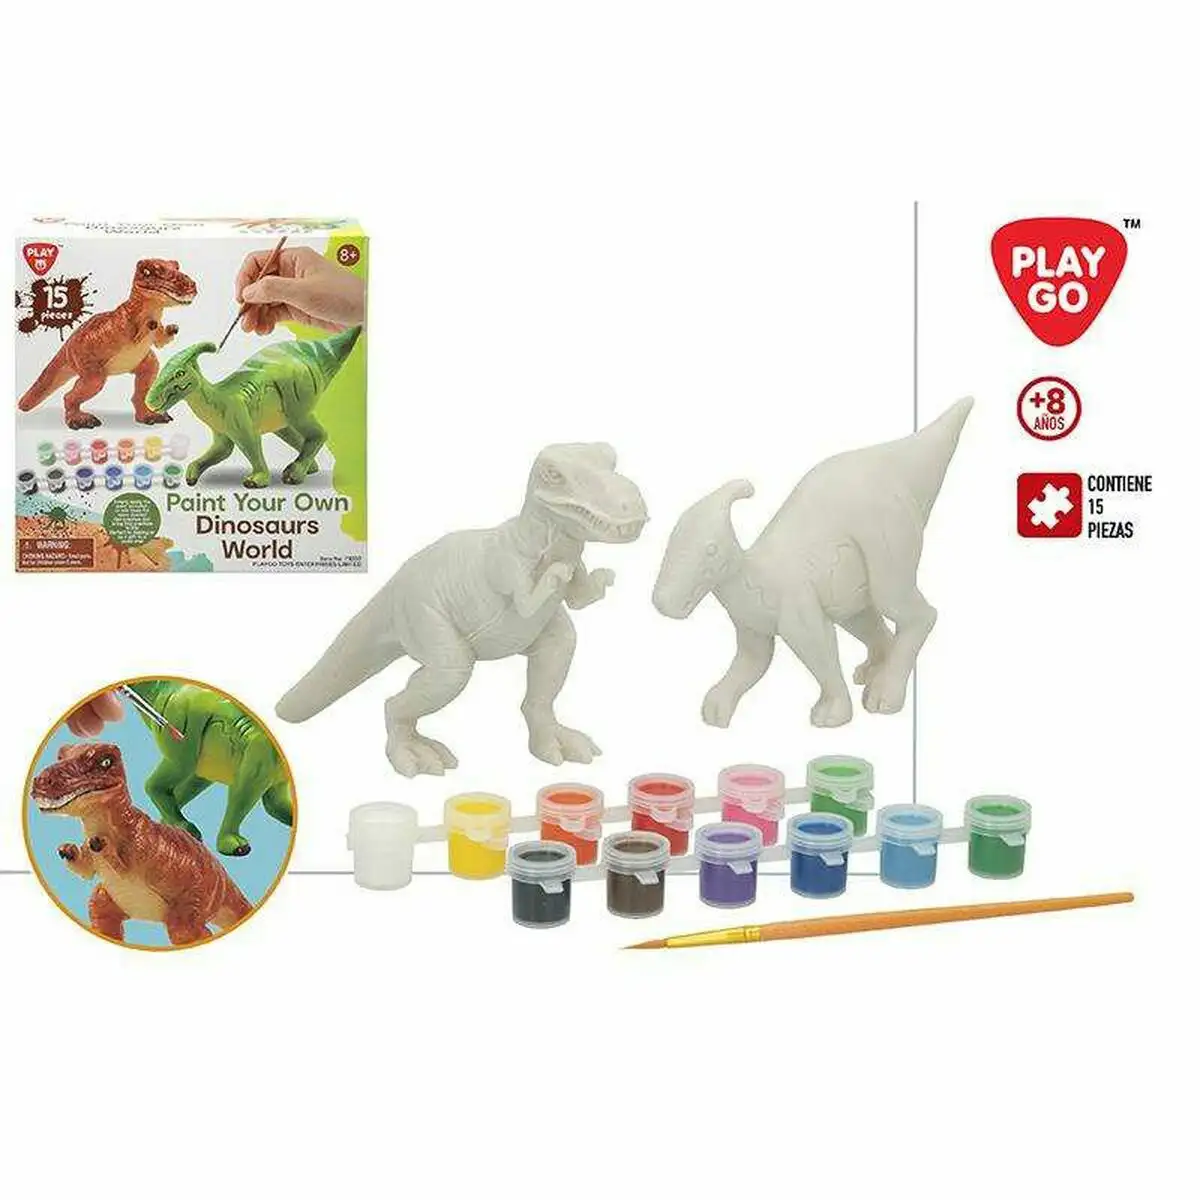 Set de peinture colorbaby dinosaurs world 6 5 x 21 5 x 21 5 cm_1325. Découvrez DIAYTAR SENEGAL - Votre Destination de Shopping Inspirée. Naviguez à travers nos offres variées et trouvez des articles qui reflètent votre personnalité et vos goûts.